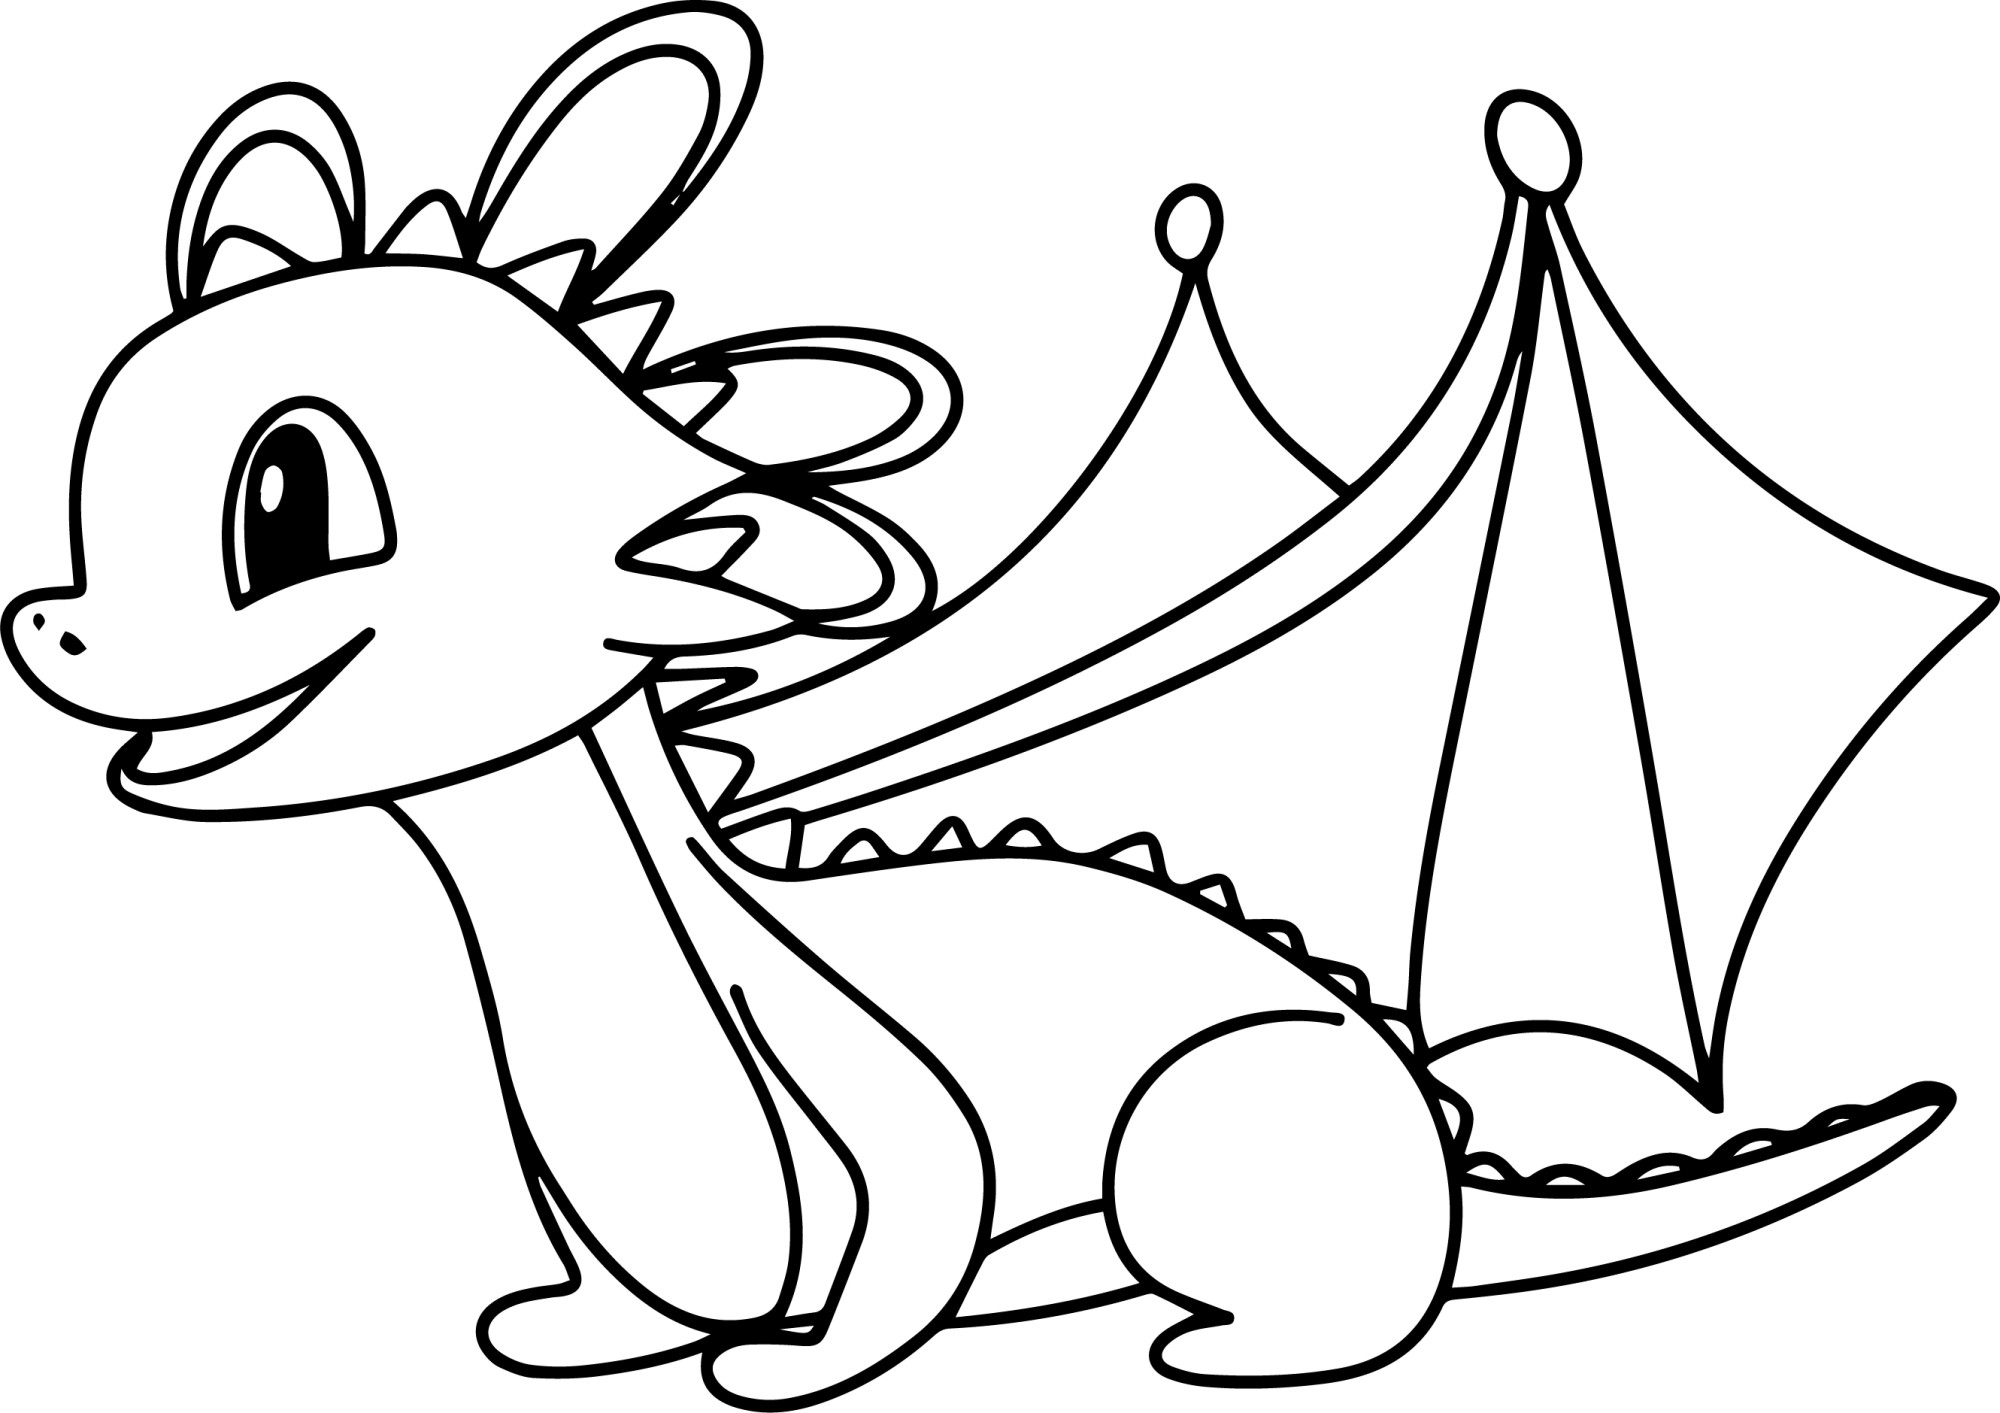 Раскраска для детей: дракончик с крыльями